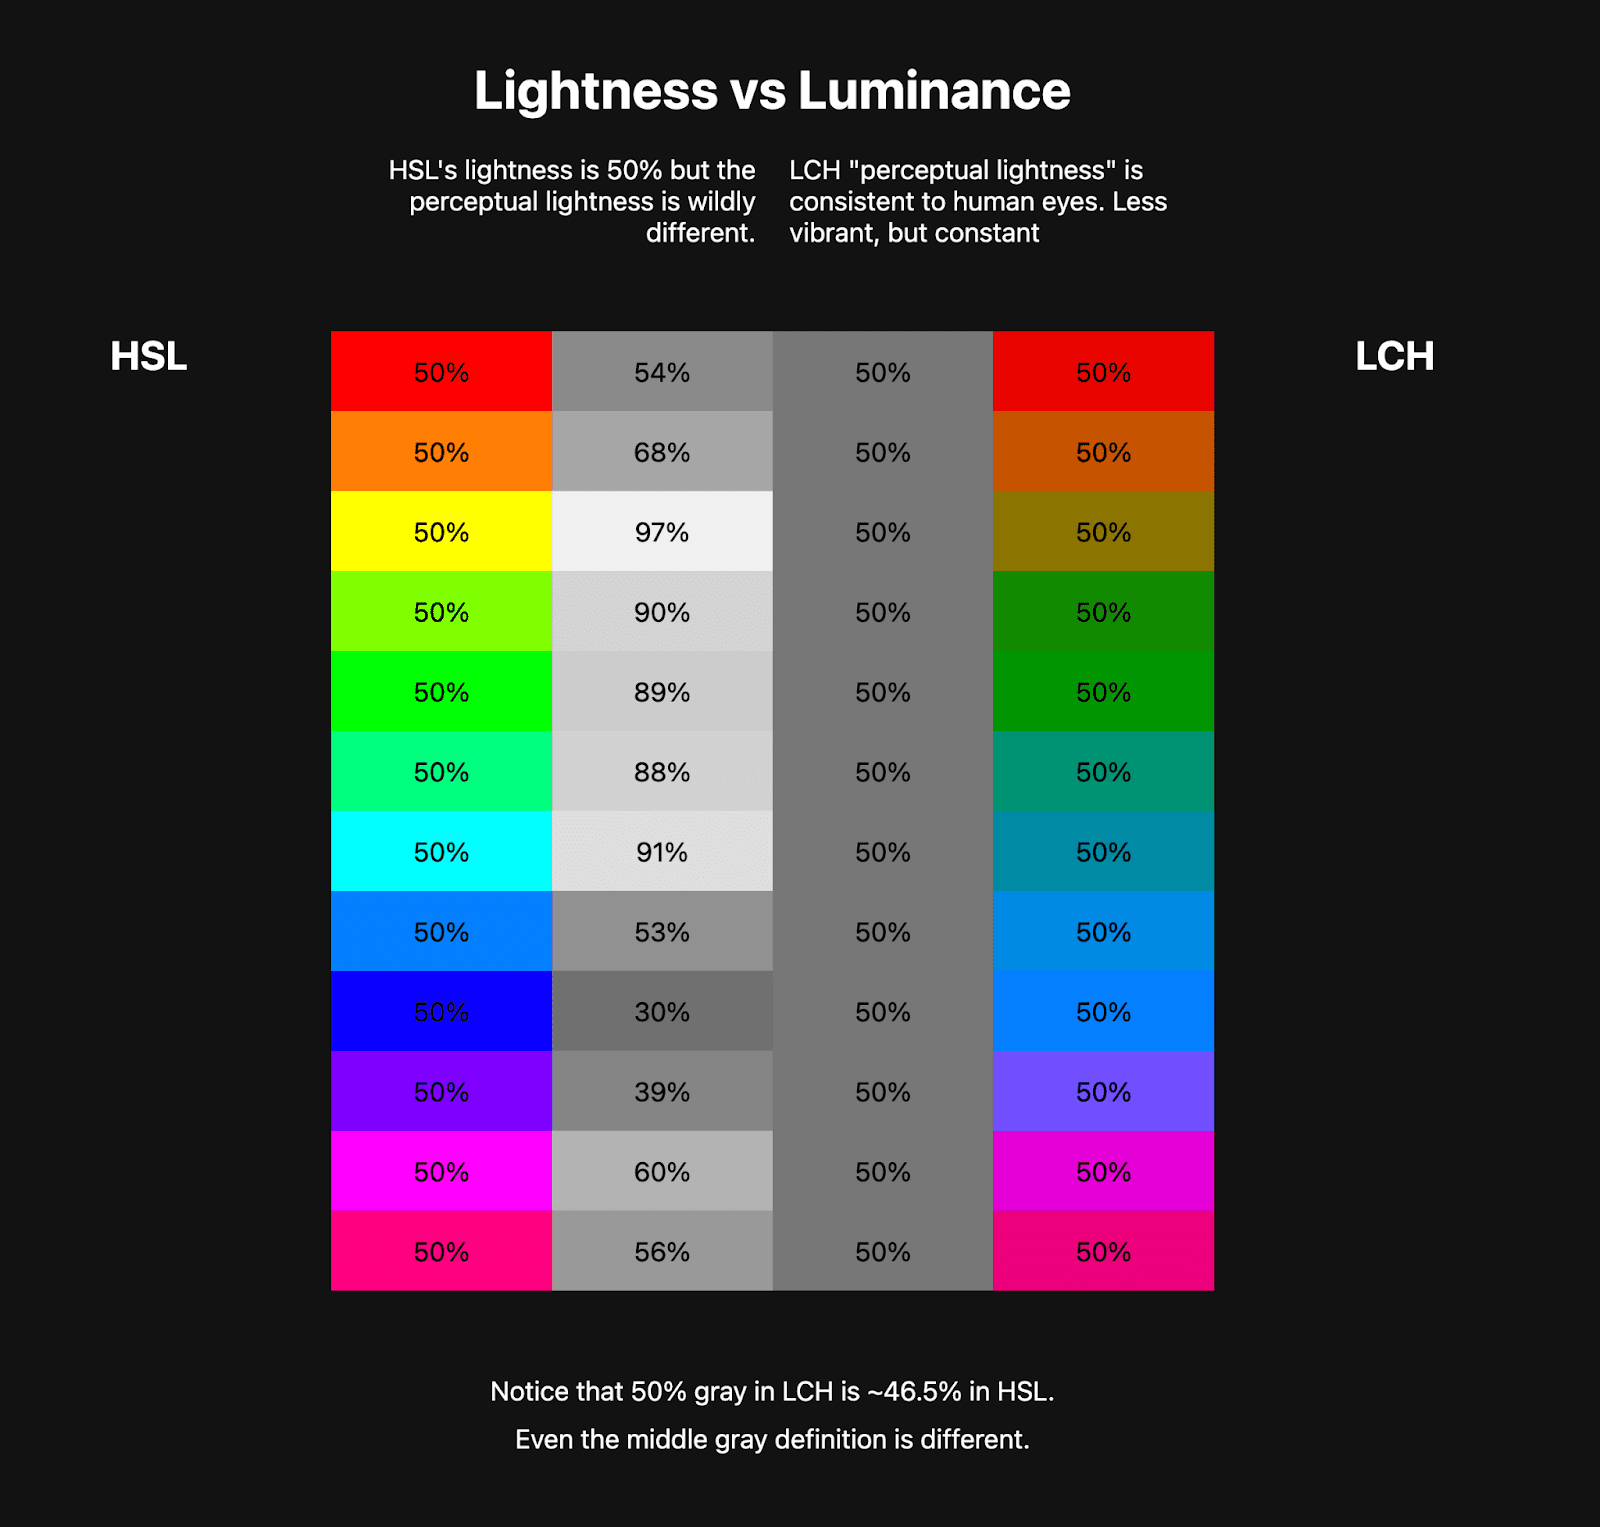 دو جدول رنگی در کنار هم قرار دارند. جدول اول یک رنگین کمان HSL از 10 رنگ یا بیشتر را نشان می‌دهد و در کنار آن رنگ‌های خاکستری وجود دارند که روشنی آن رنگ‌های HSL را نشان می‌دهند. جدول دوم یک رنگین کمان LCH را نشان می دهد که بسیار کمتر پر جنب و جوش است، اما رنگ های خاکستری کنار آن ثابت هستند. این نشان می دهد که چگونه LCH دارای مقدار روشنایی ثابت سالم است در حالی که HSL ندارد.